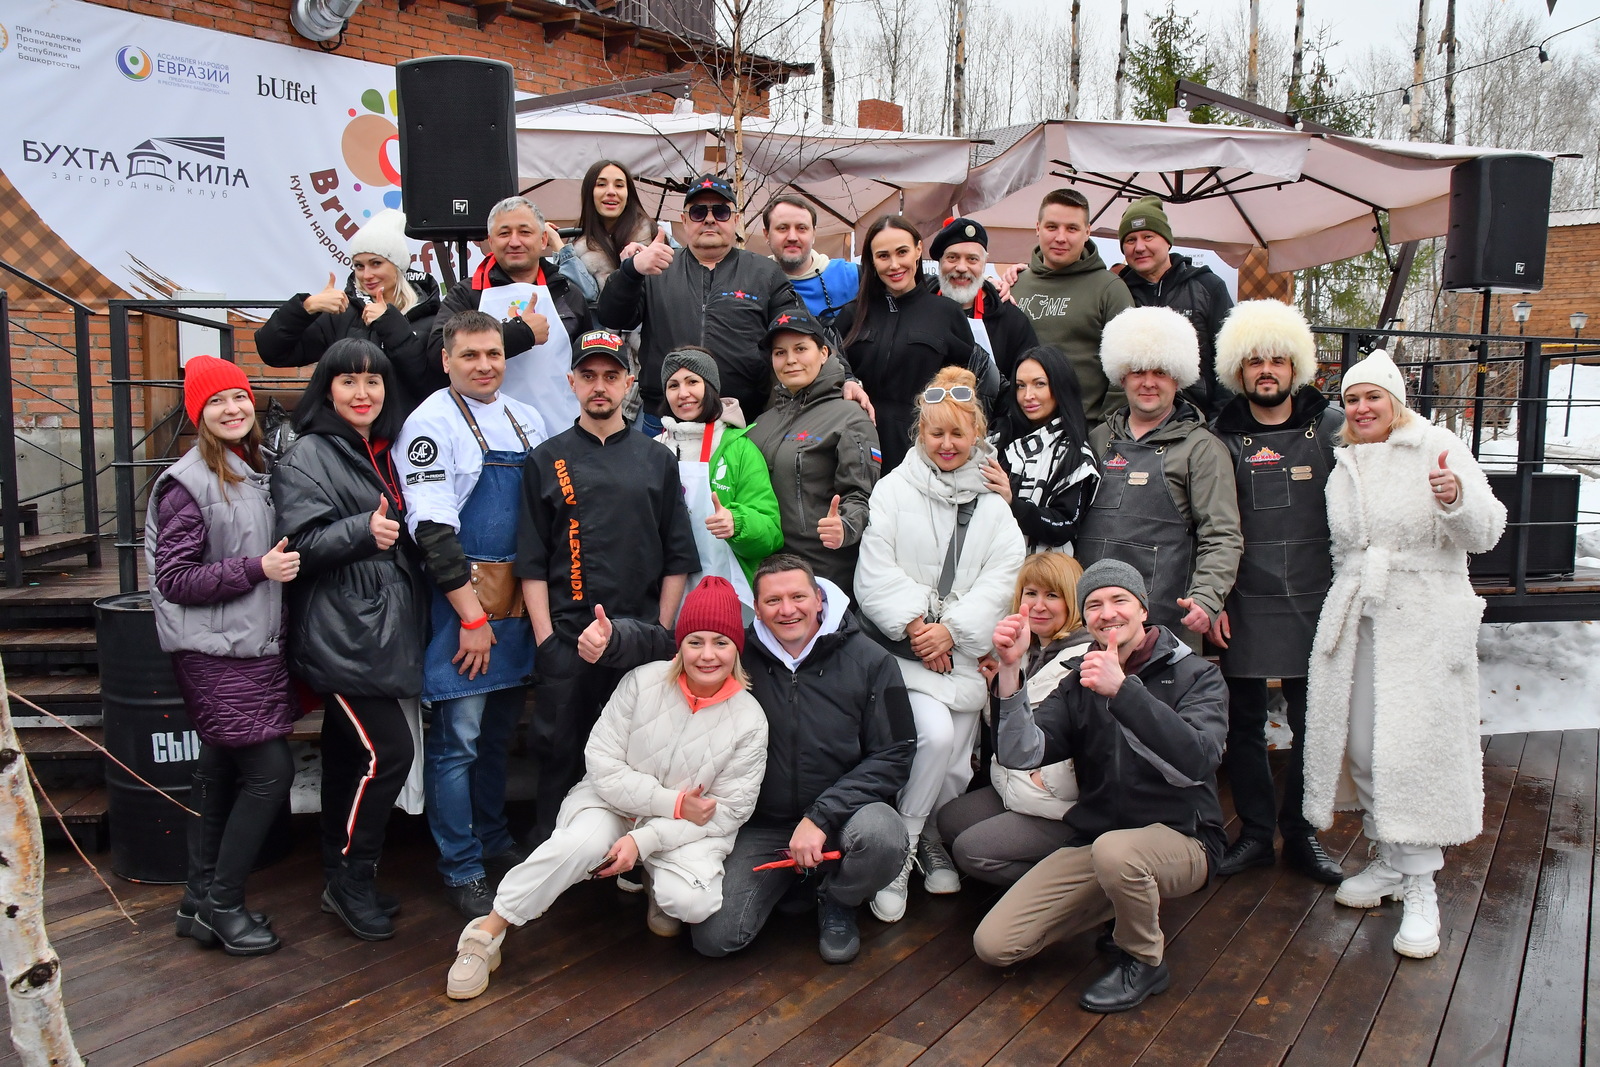 В Башкортостане прошел фестиваль «Вruderfest-15 лет» с обсуждением перспектив развития индустрии гостеприимства